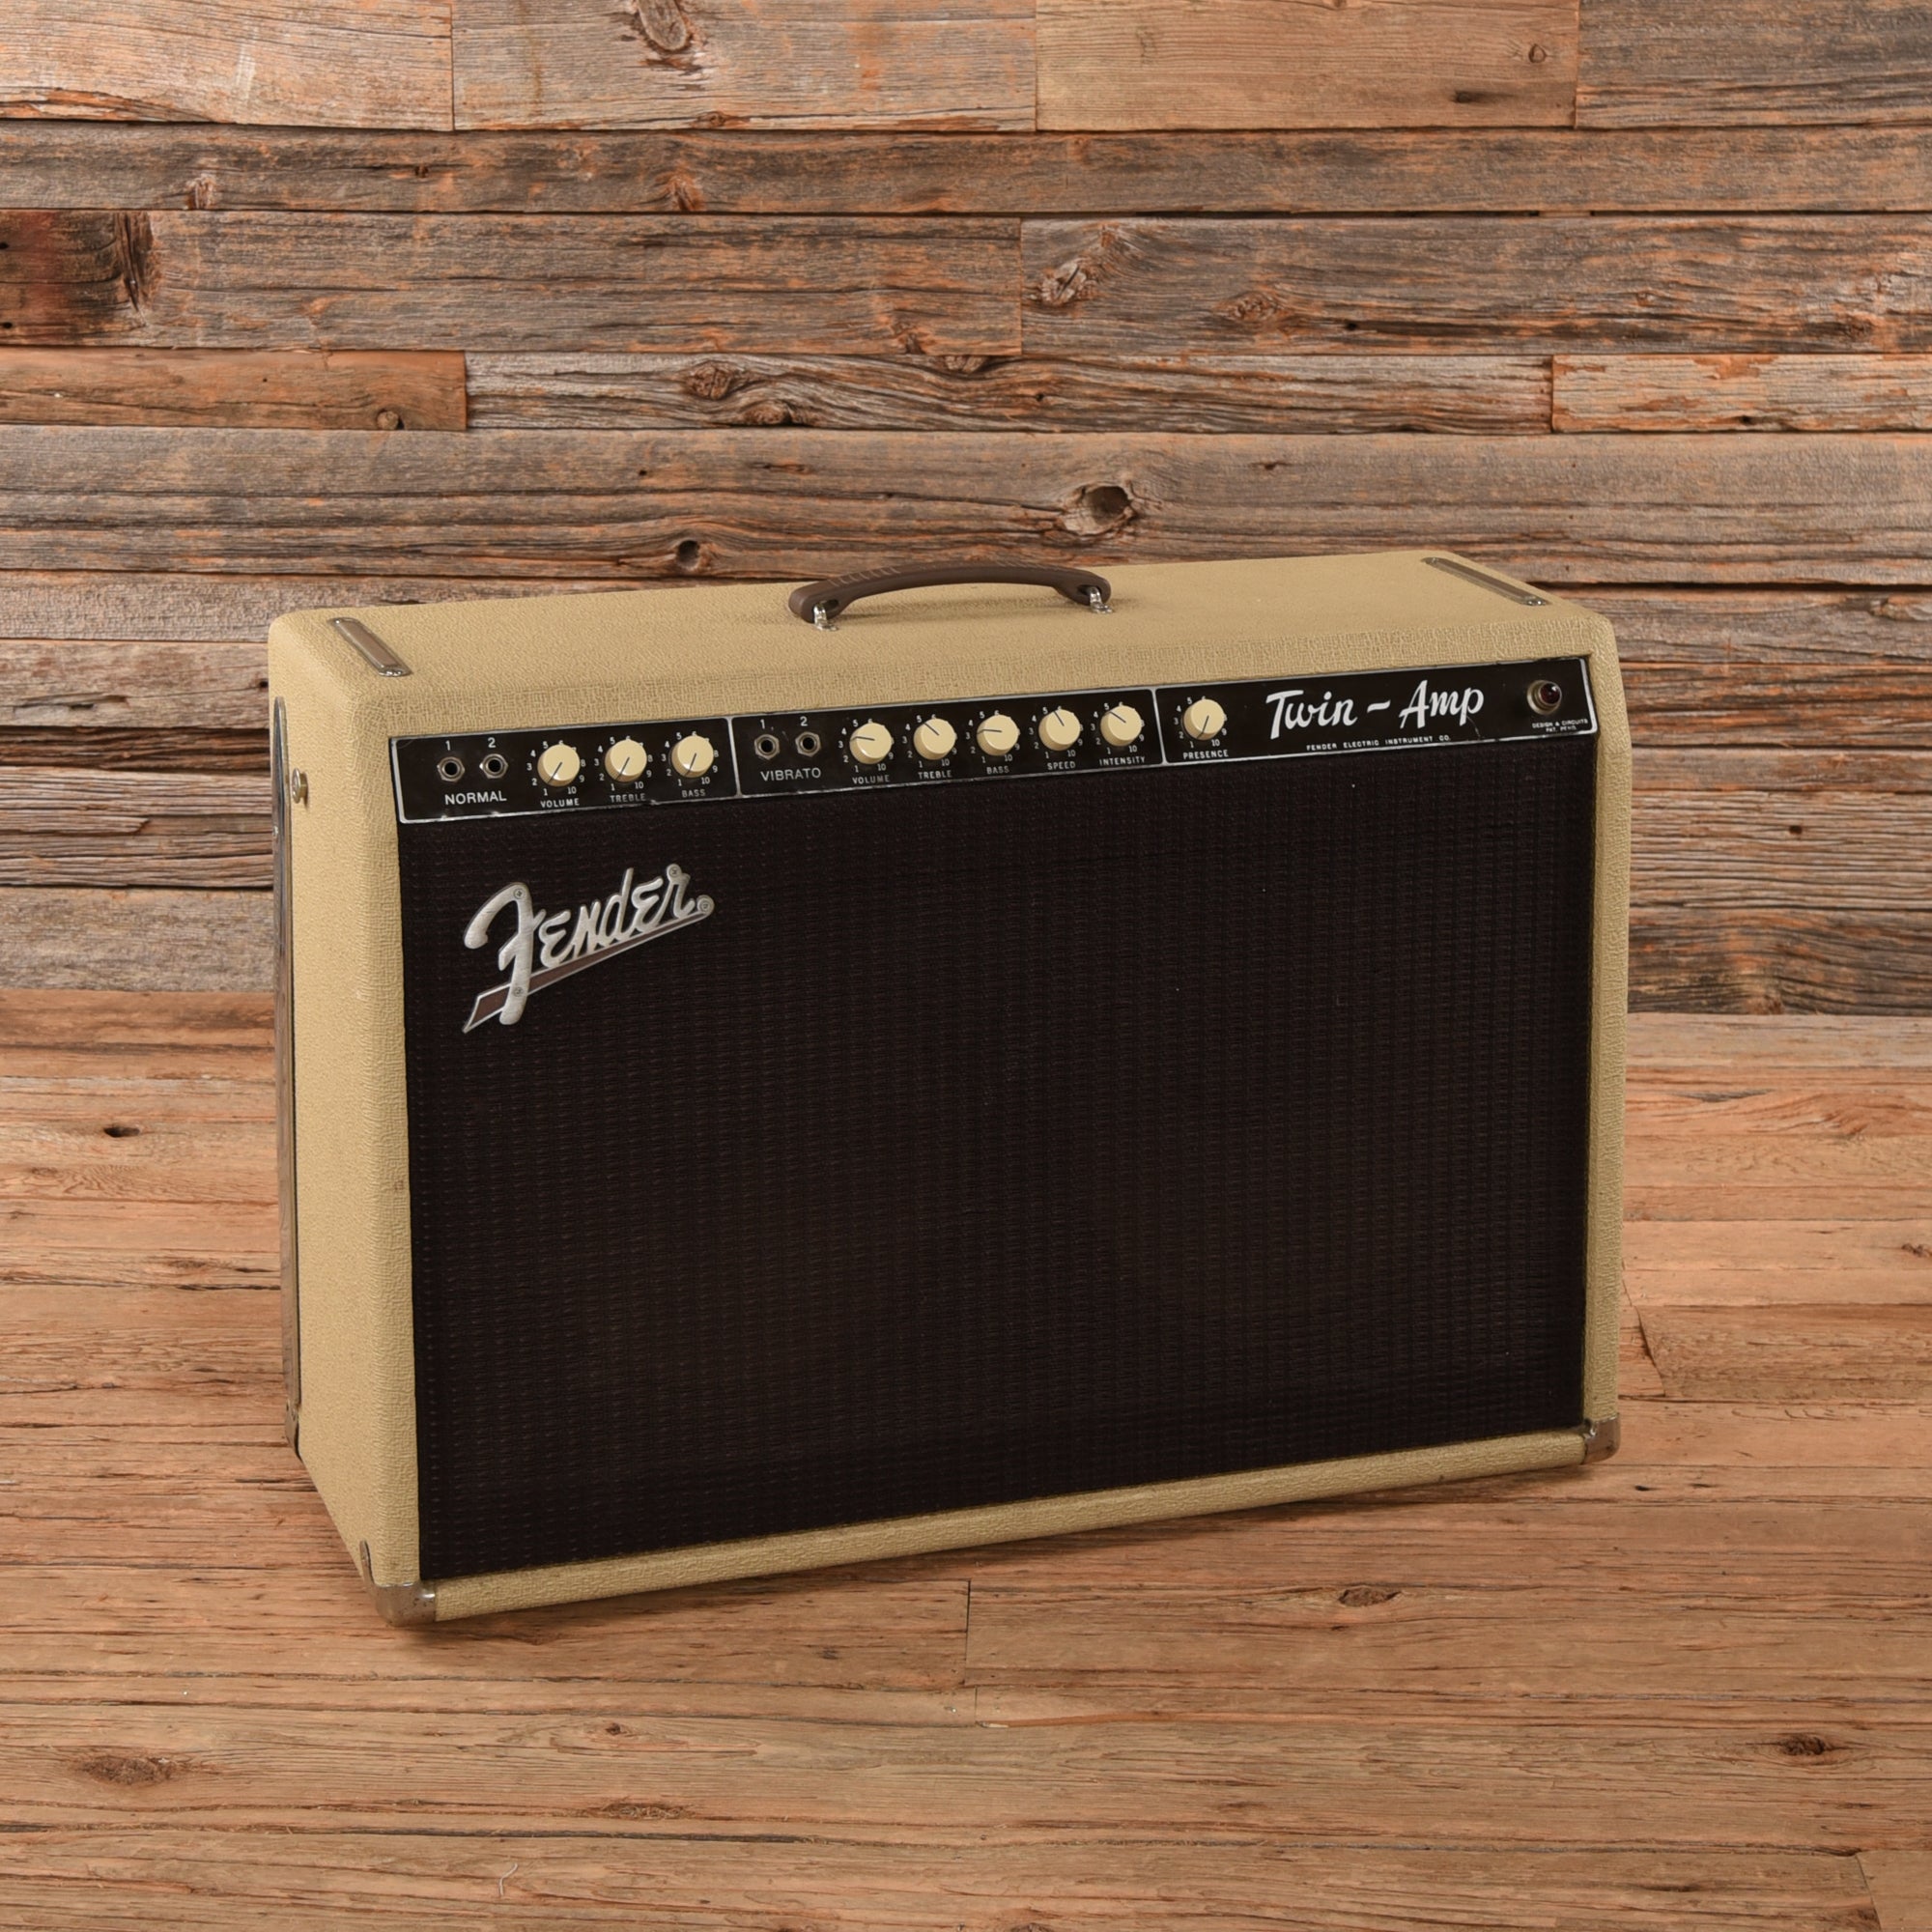 Fender Twin-Amp Blonde 1961